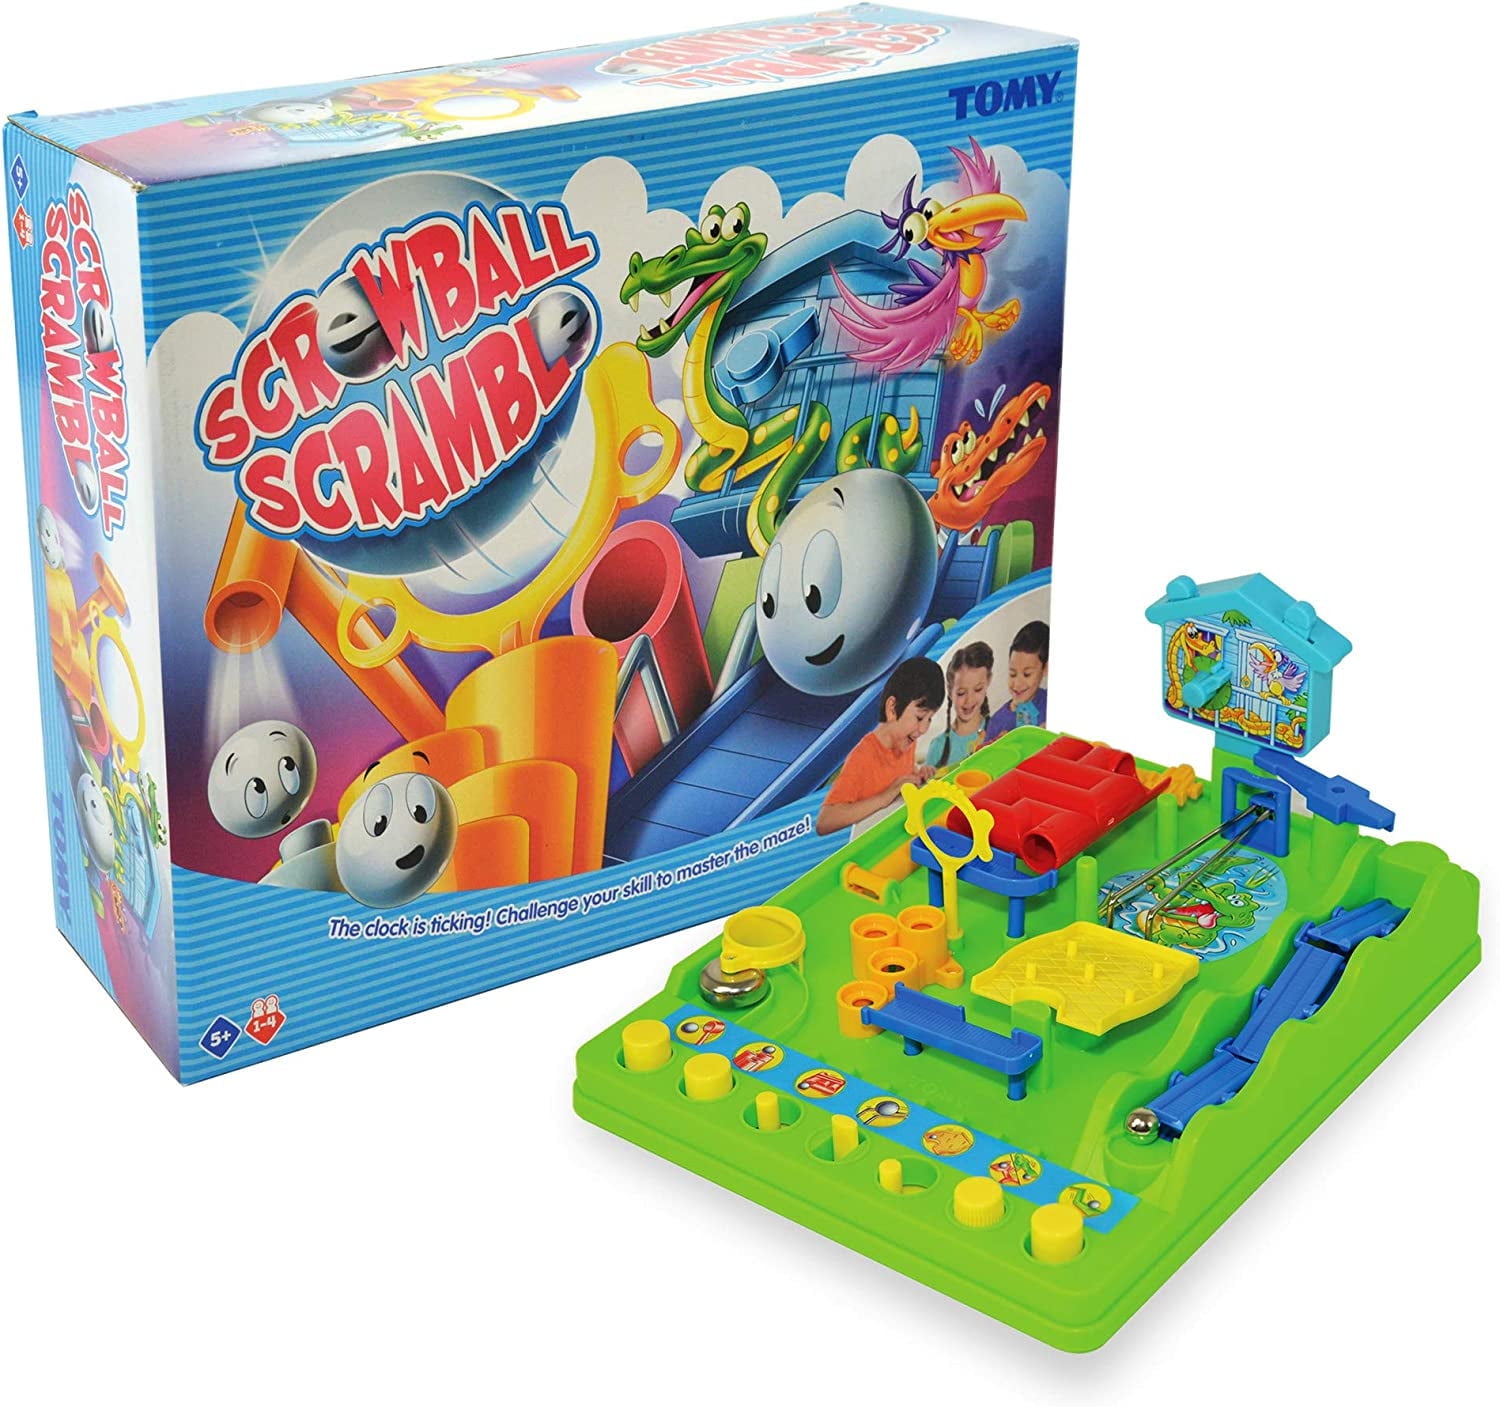 $6/mo - Finance TOMY Screwball Scramble 2 Marble Run Game for Kids